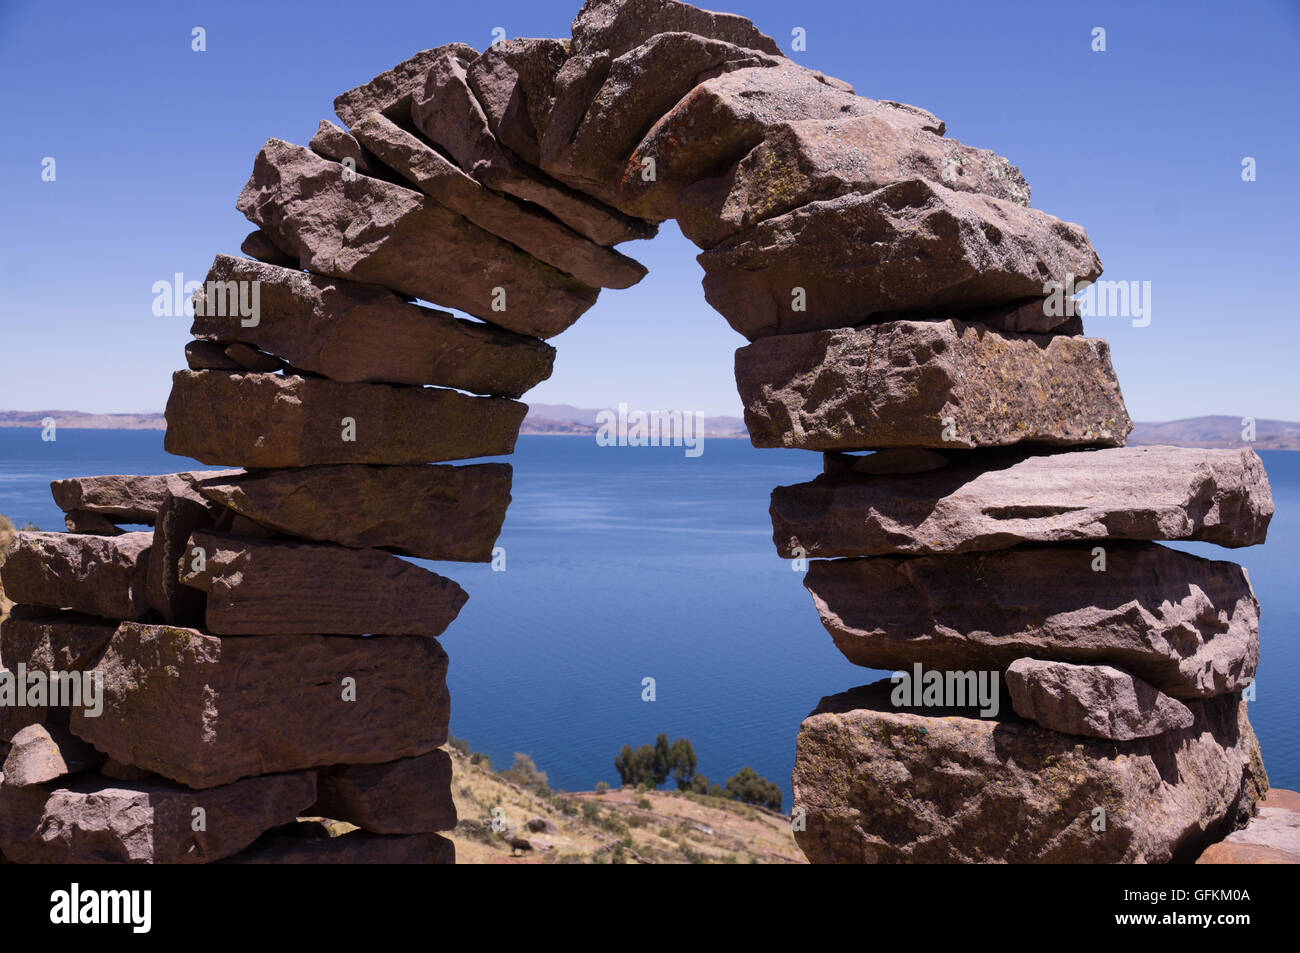 L'île de Taquile, au Pérou : Une arche en pierre historique avec vue sur le lac Titicaca Banque D'Images